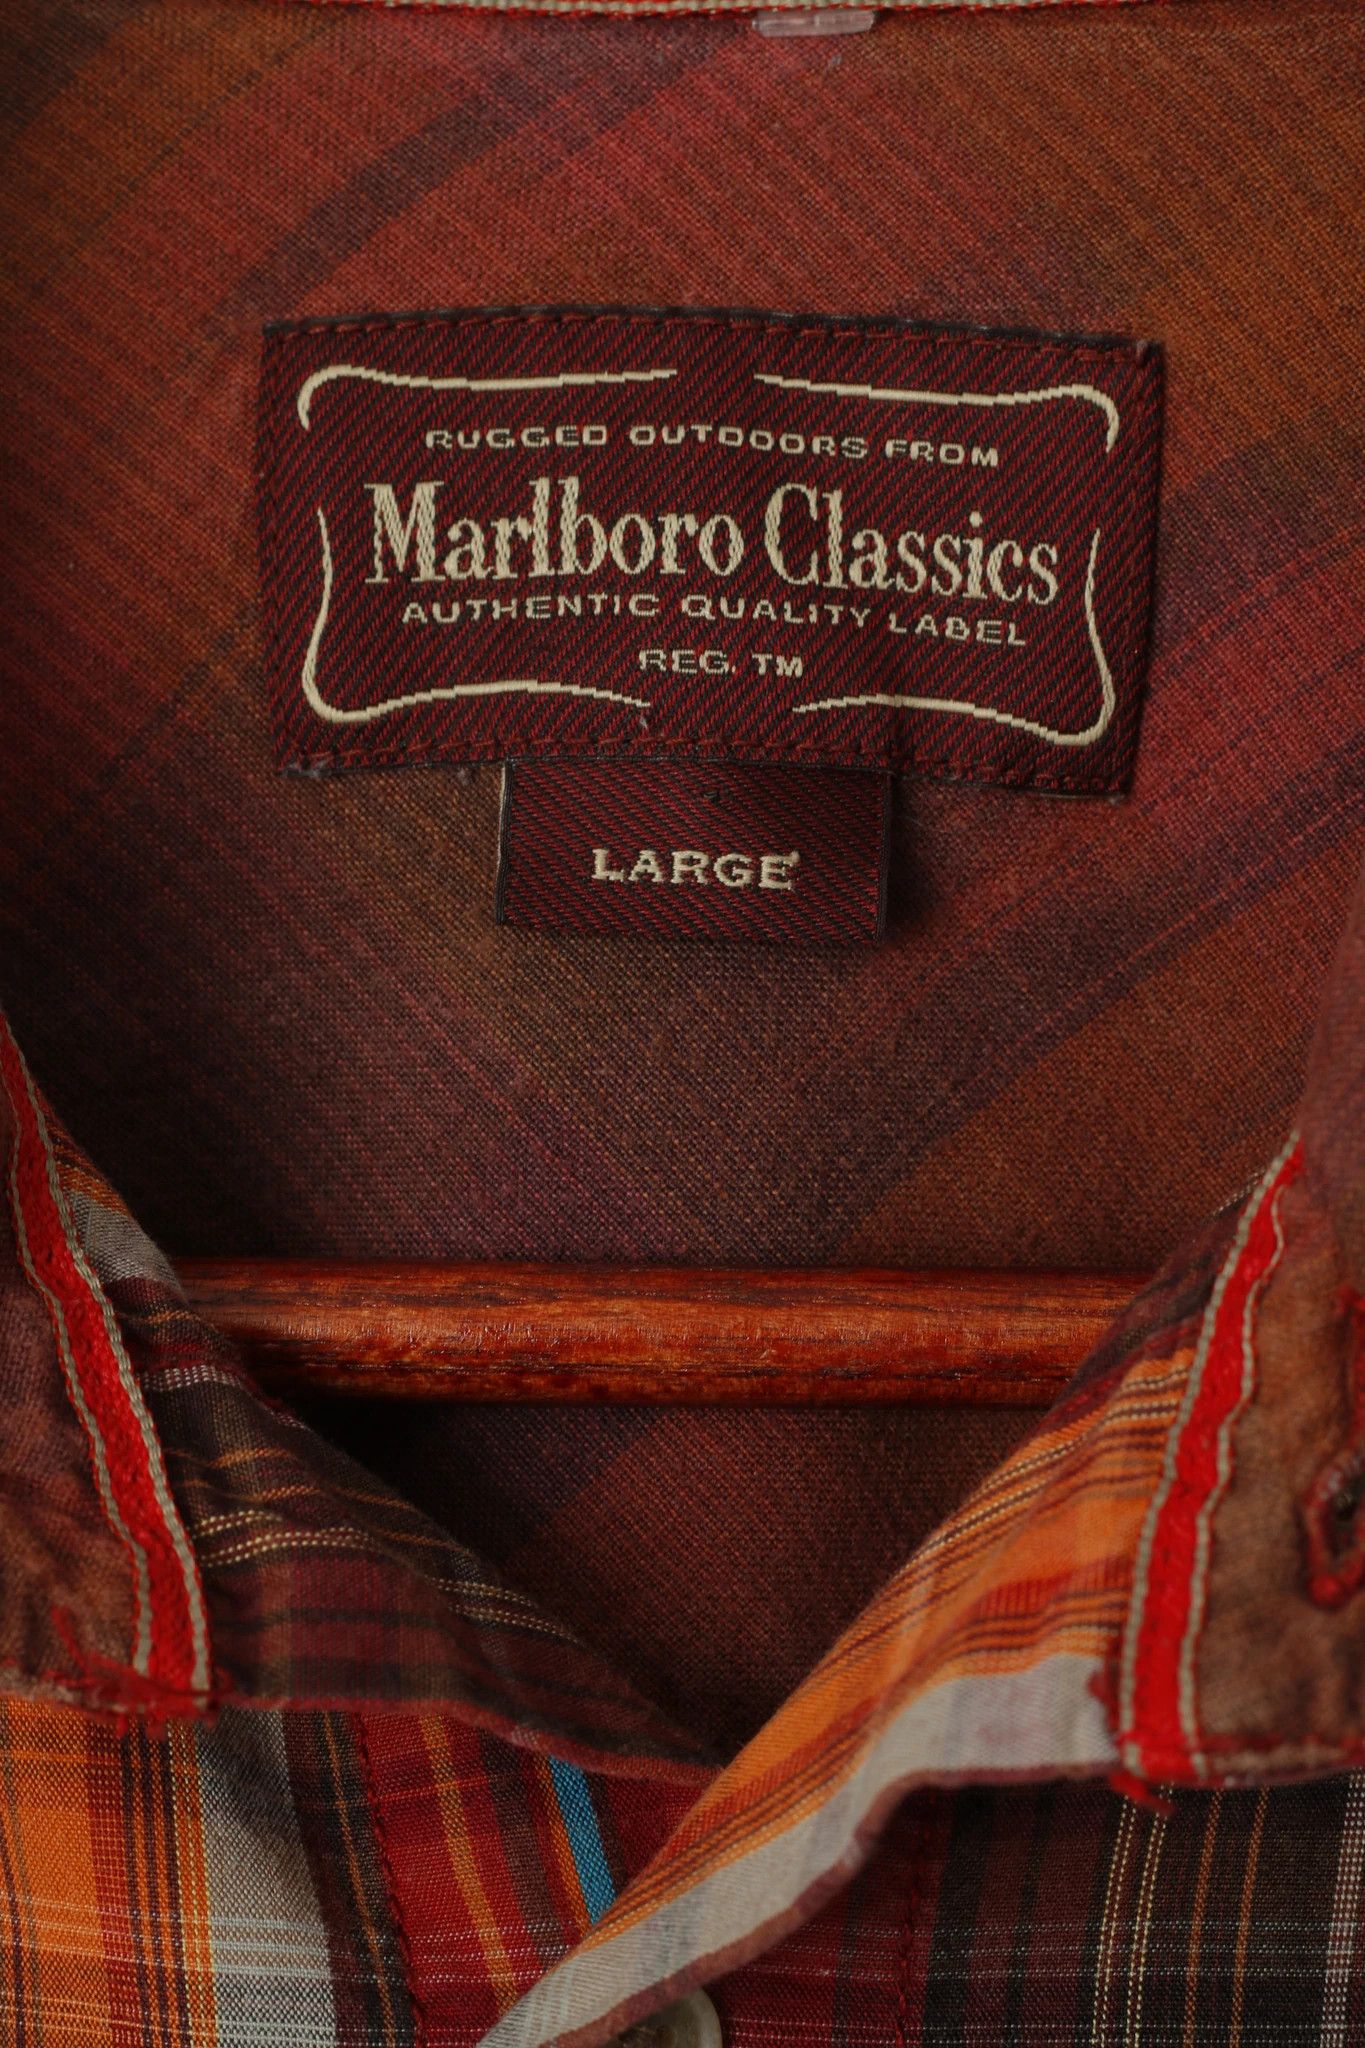 Marlboro Classics Marlboro Classics Men L Casual Shirt Red Check 0486 Size US L / EU 52-54 / 3 - 4 Thumbnail